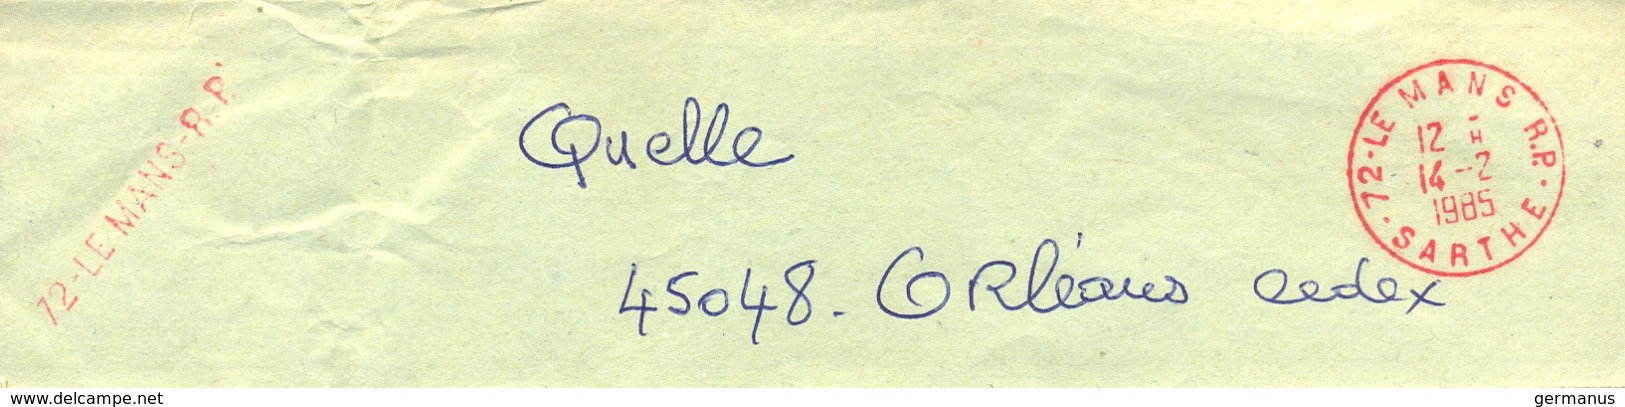 COLLIER SAC POSTAL TàD & GRIFFE Rouge 72-LE MANS R.P.  - SARTHE - Du 14-8-1985 => QUELLE 45048 ORLEANS CEDEX - Documenti Della Posta